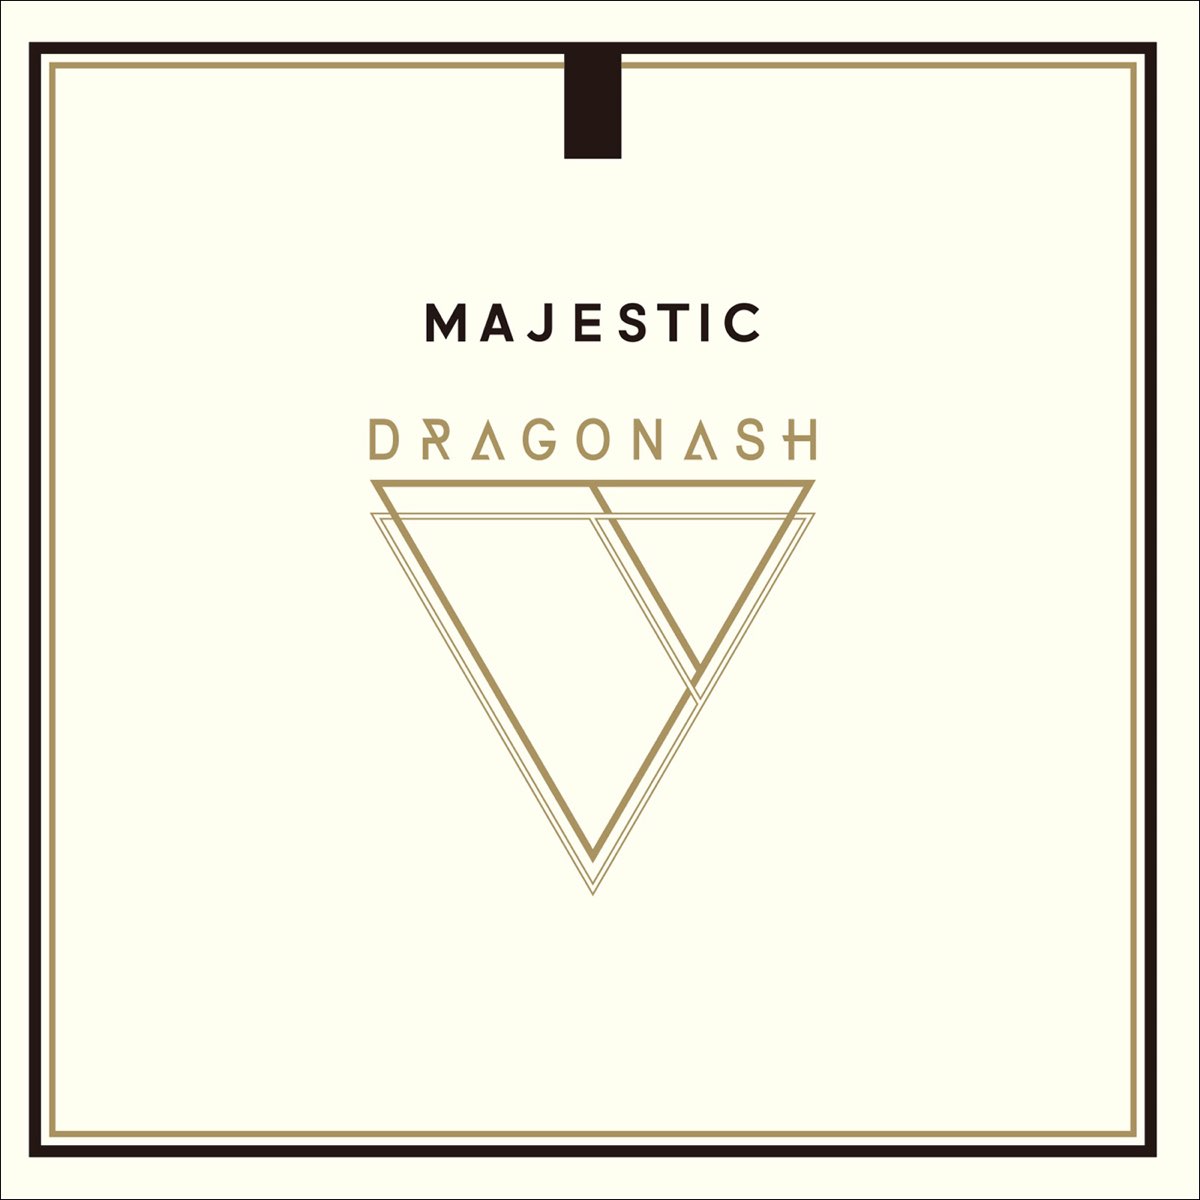 ‎Dragon Ashの「MAJESTIC」をApple Musicで